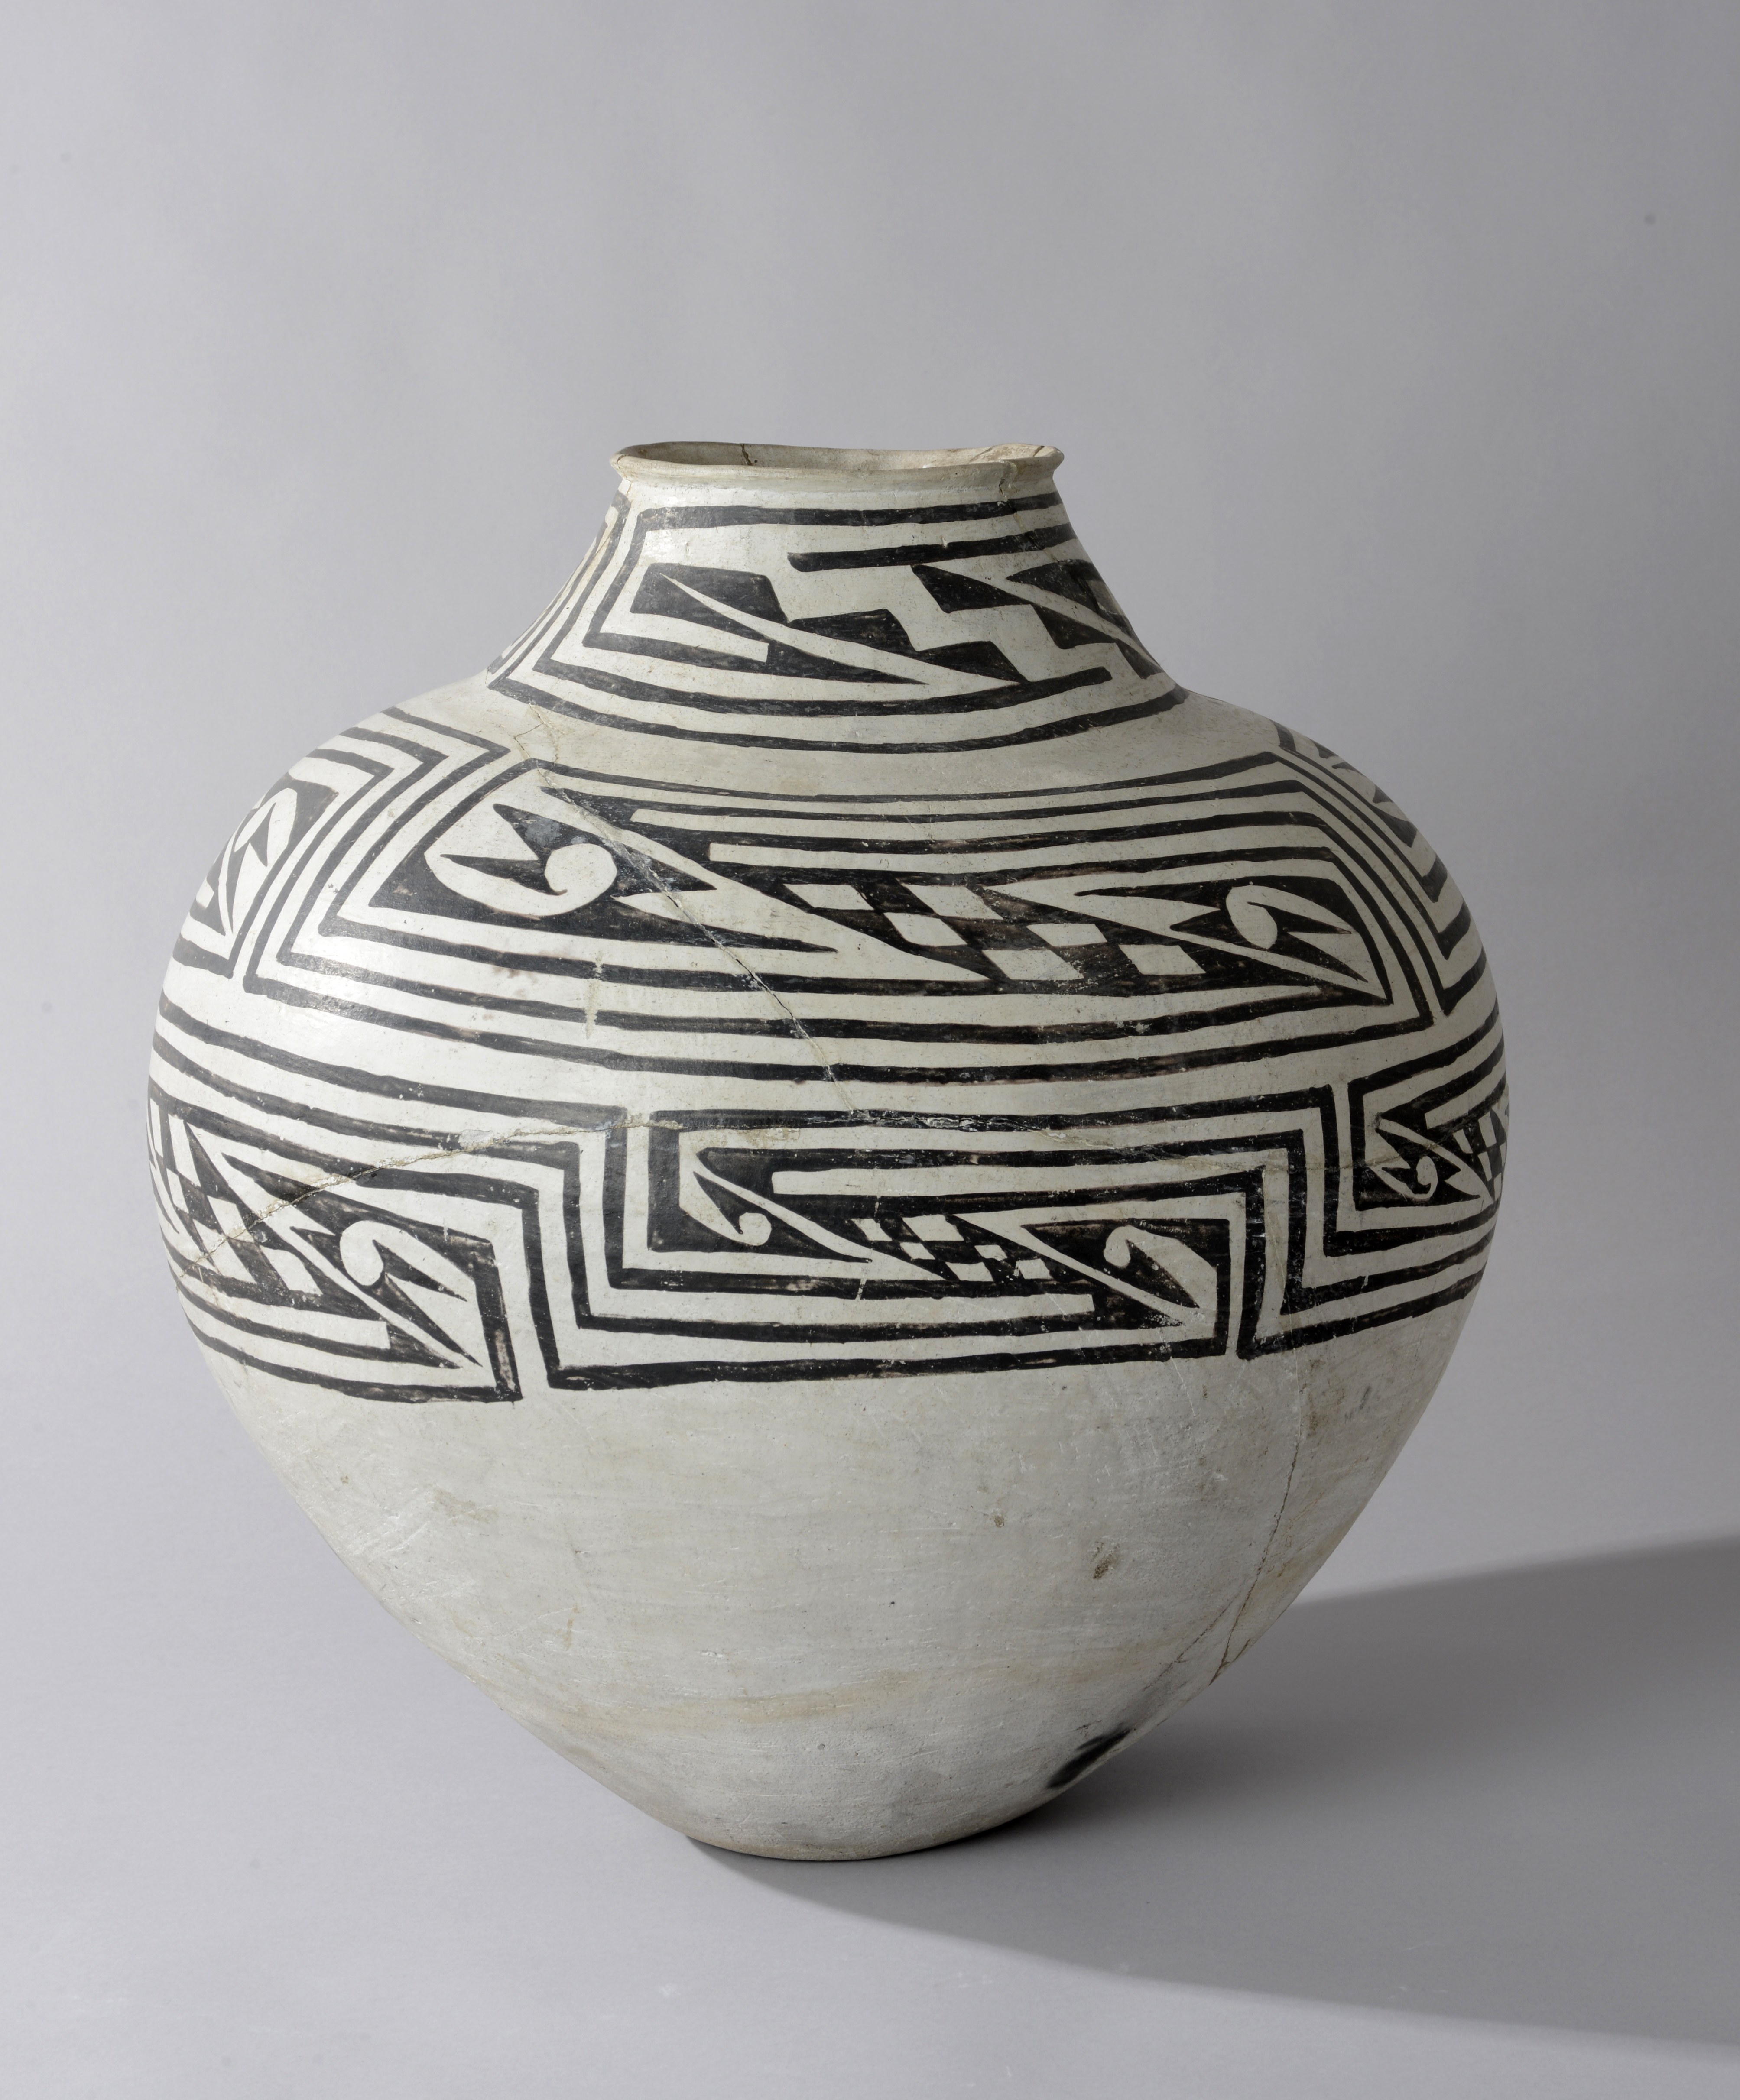 anasazi baskets and pottery